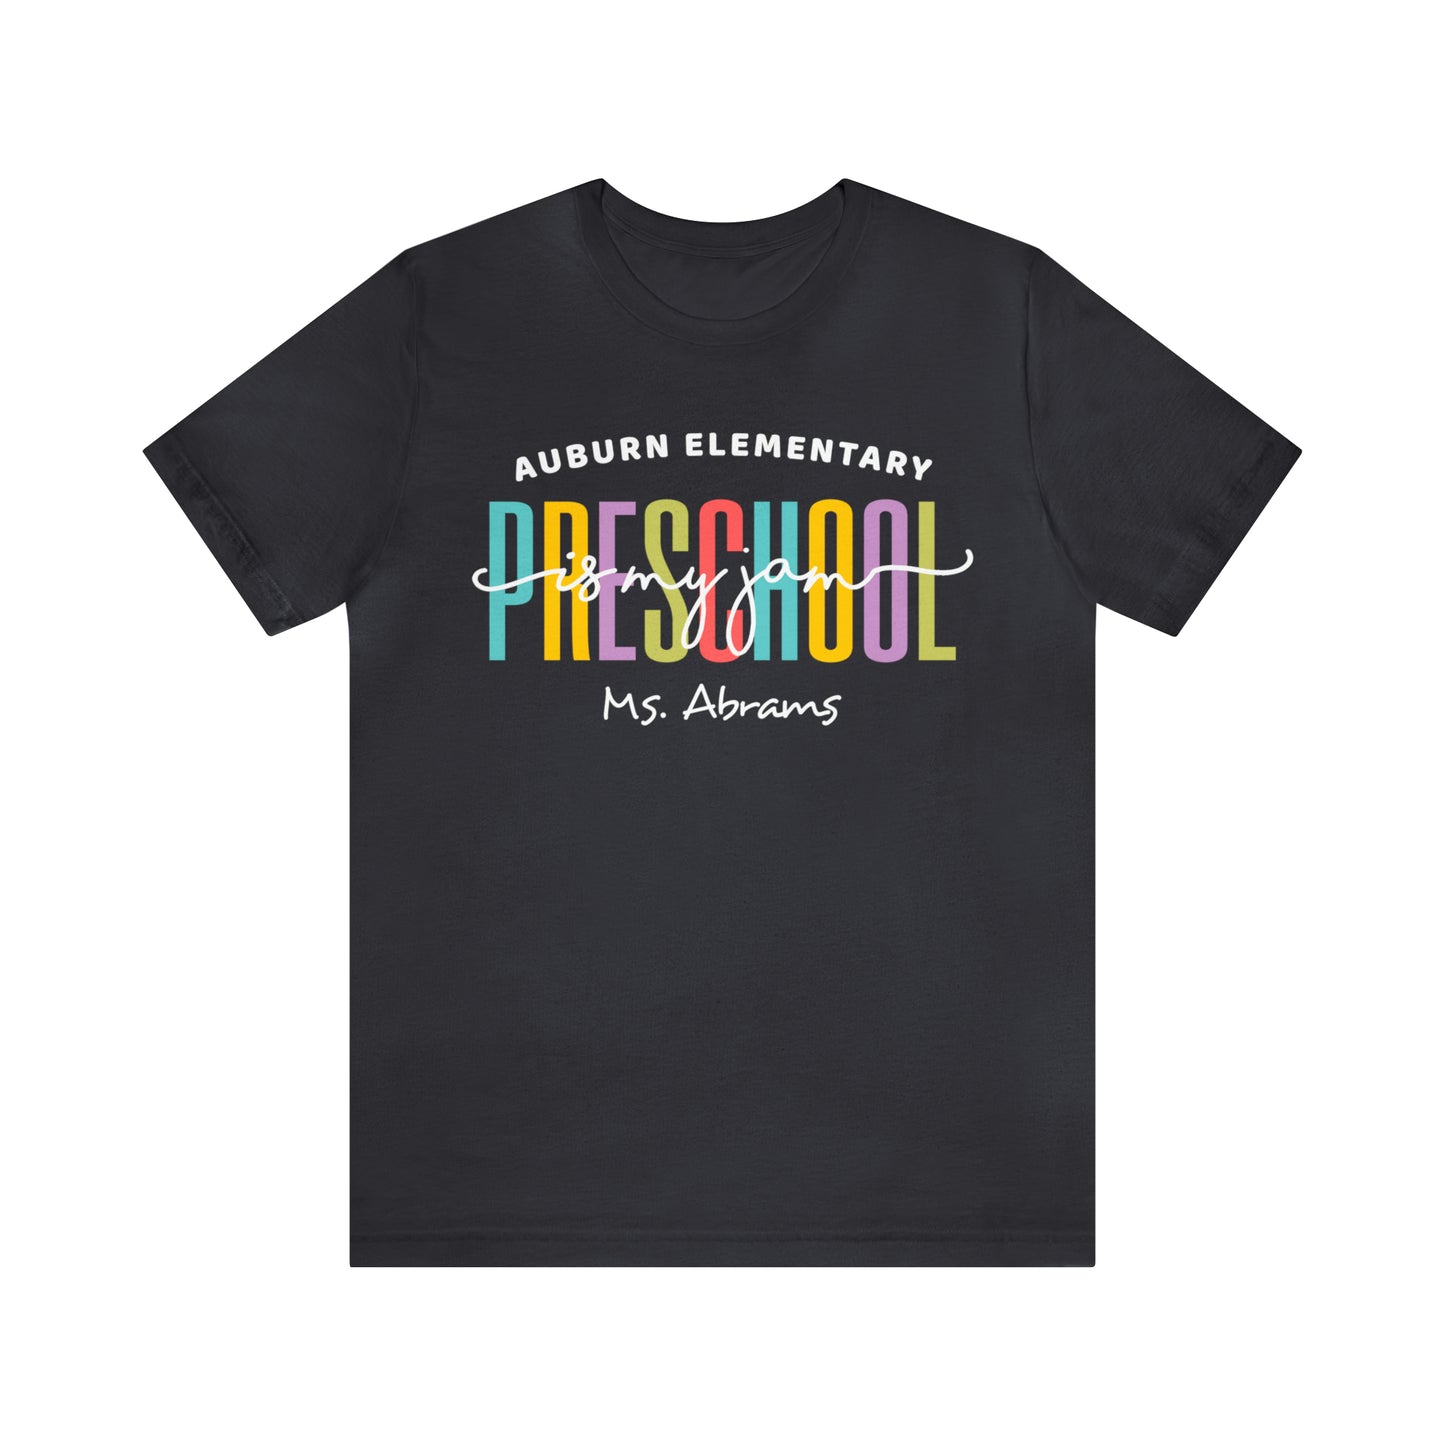 Preschool is my jam Teacher Team Shirt, School Squad Teacher Shirt